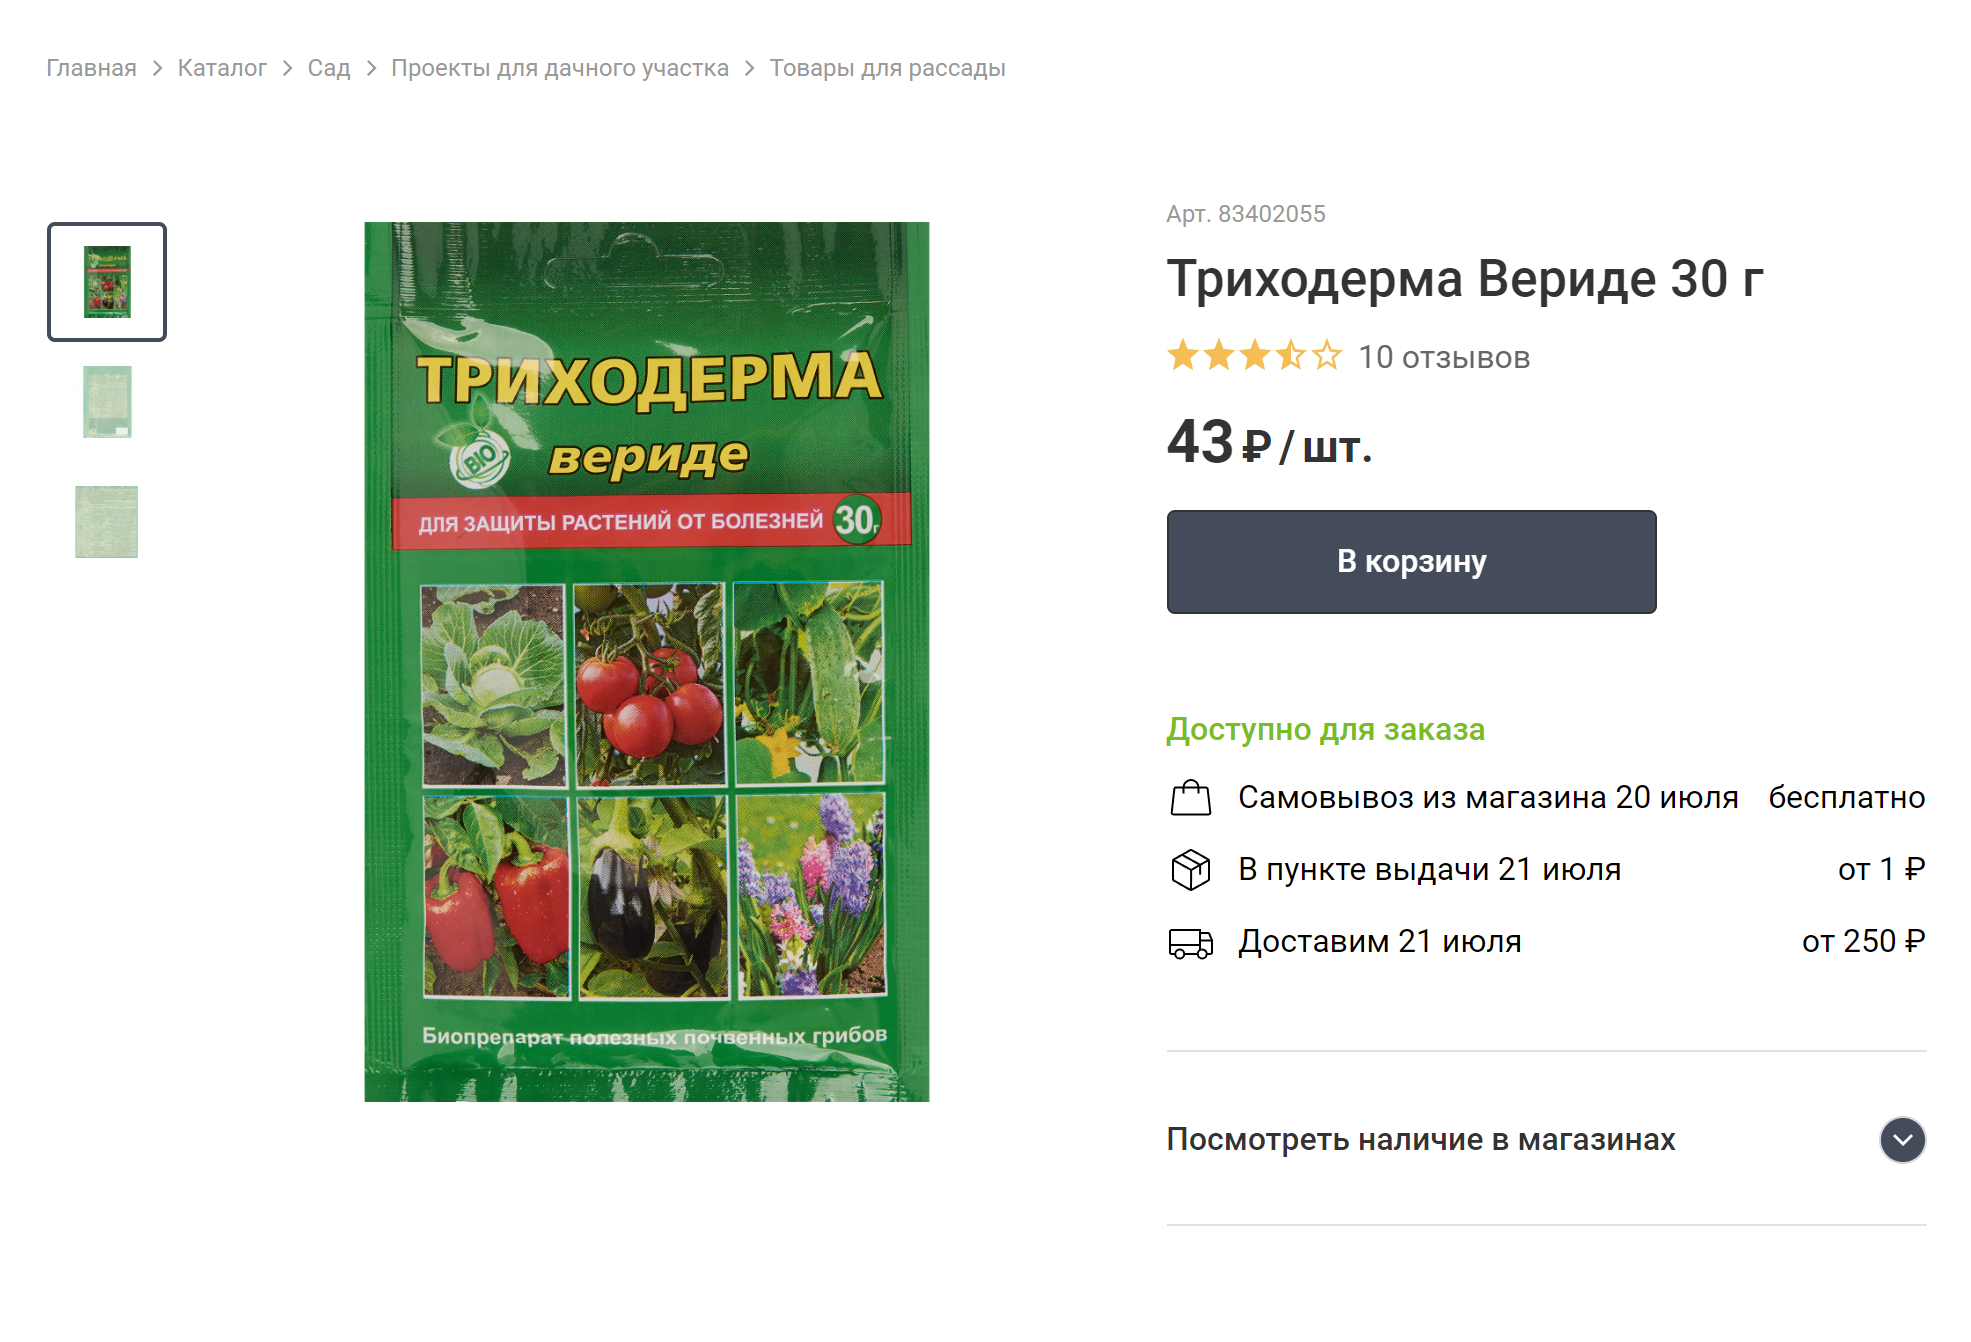 Препарат, который обычно продают в садоводческих магазинах и на маркетплейсах. Источник: leroymerlin.ru